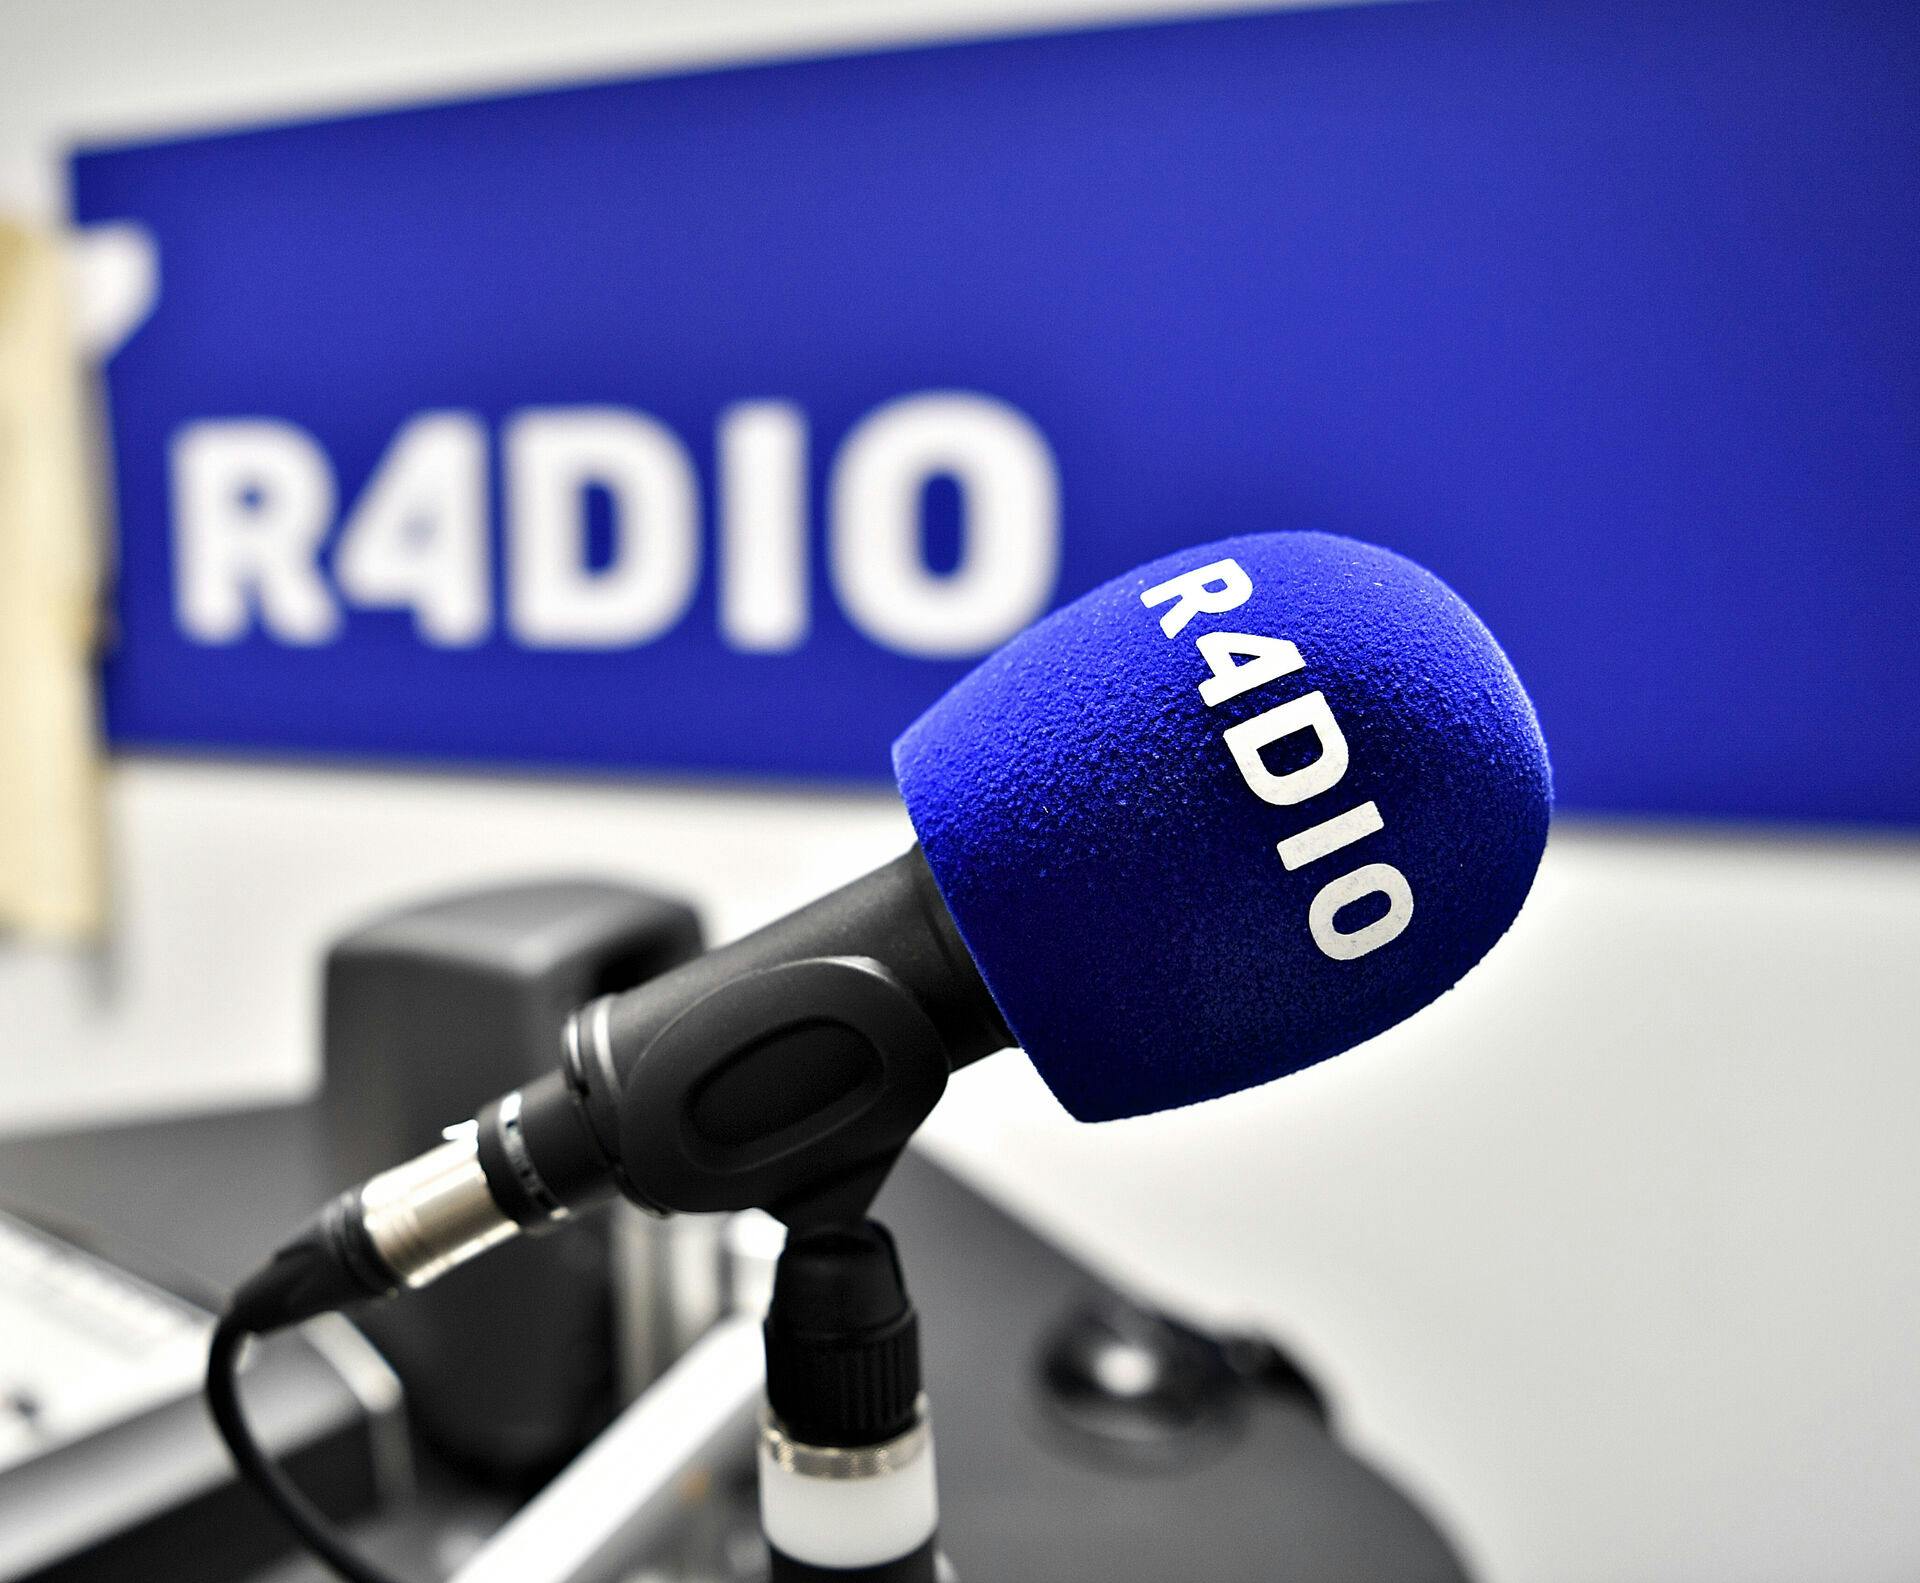 Radio4 har blandt andet programmet "Det sidste måltid".